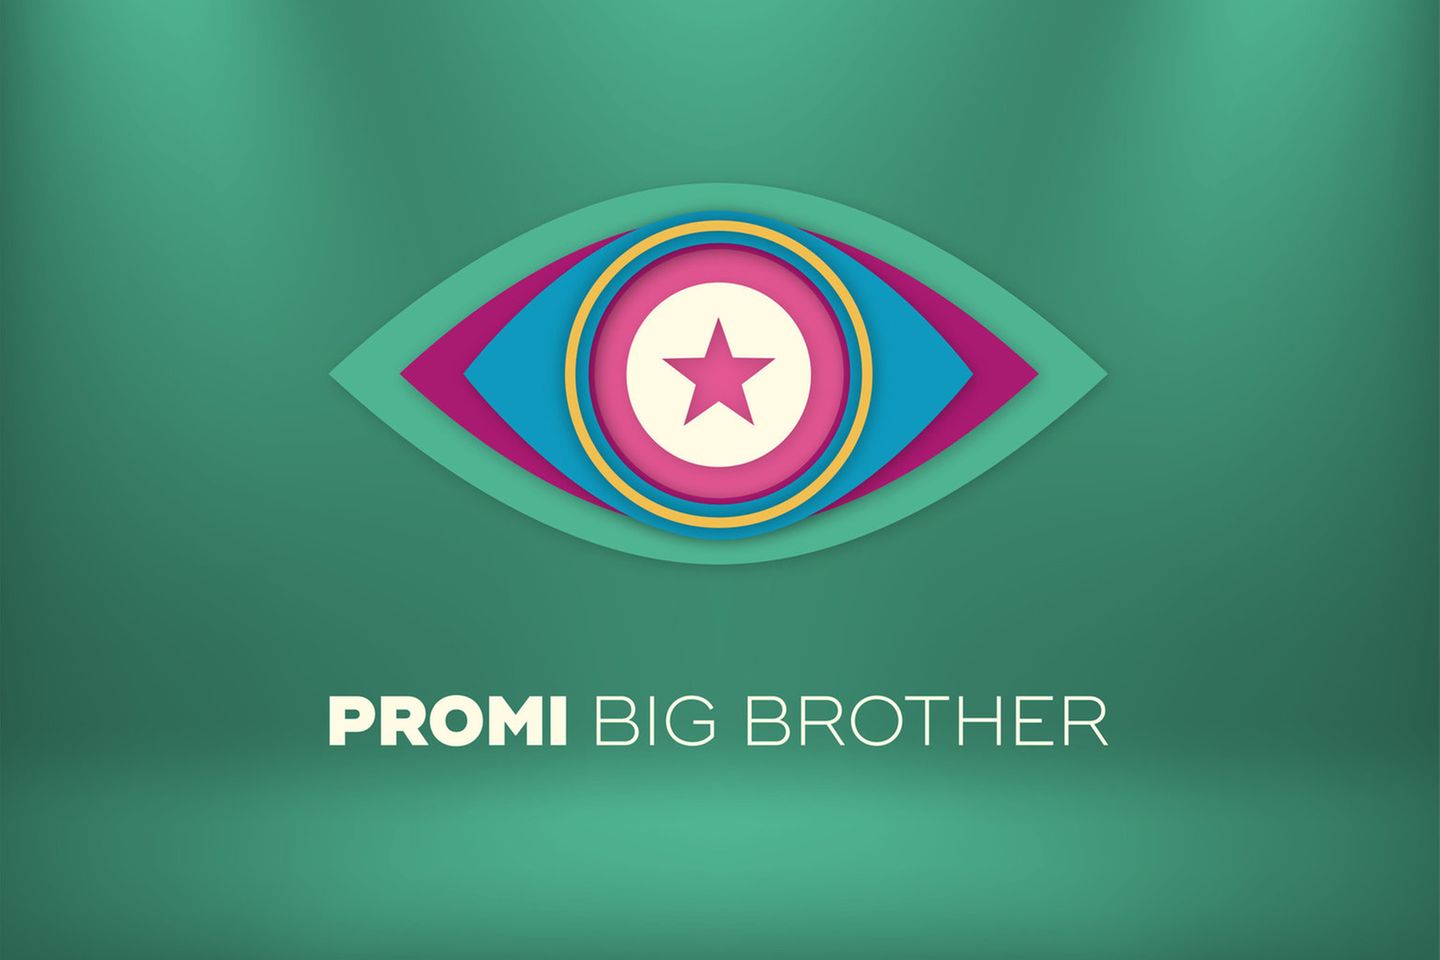 "Promi Big Brother" startet am 9. August auf Sat.1